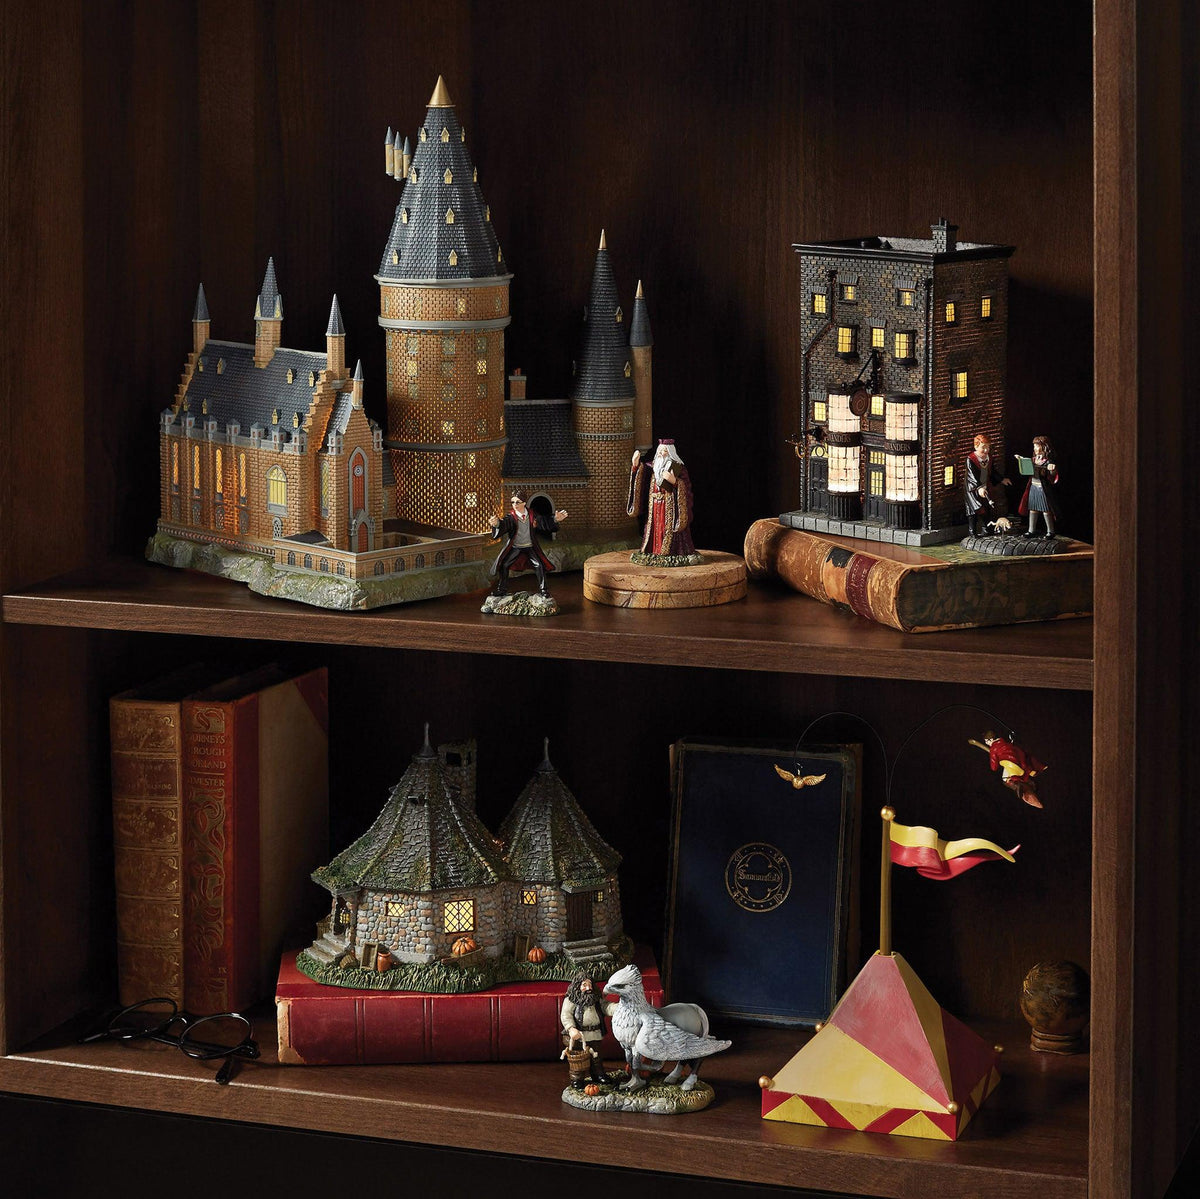 Weasleys' Wizard Wheezes Building - Department 56 Harry Potter Village